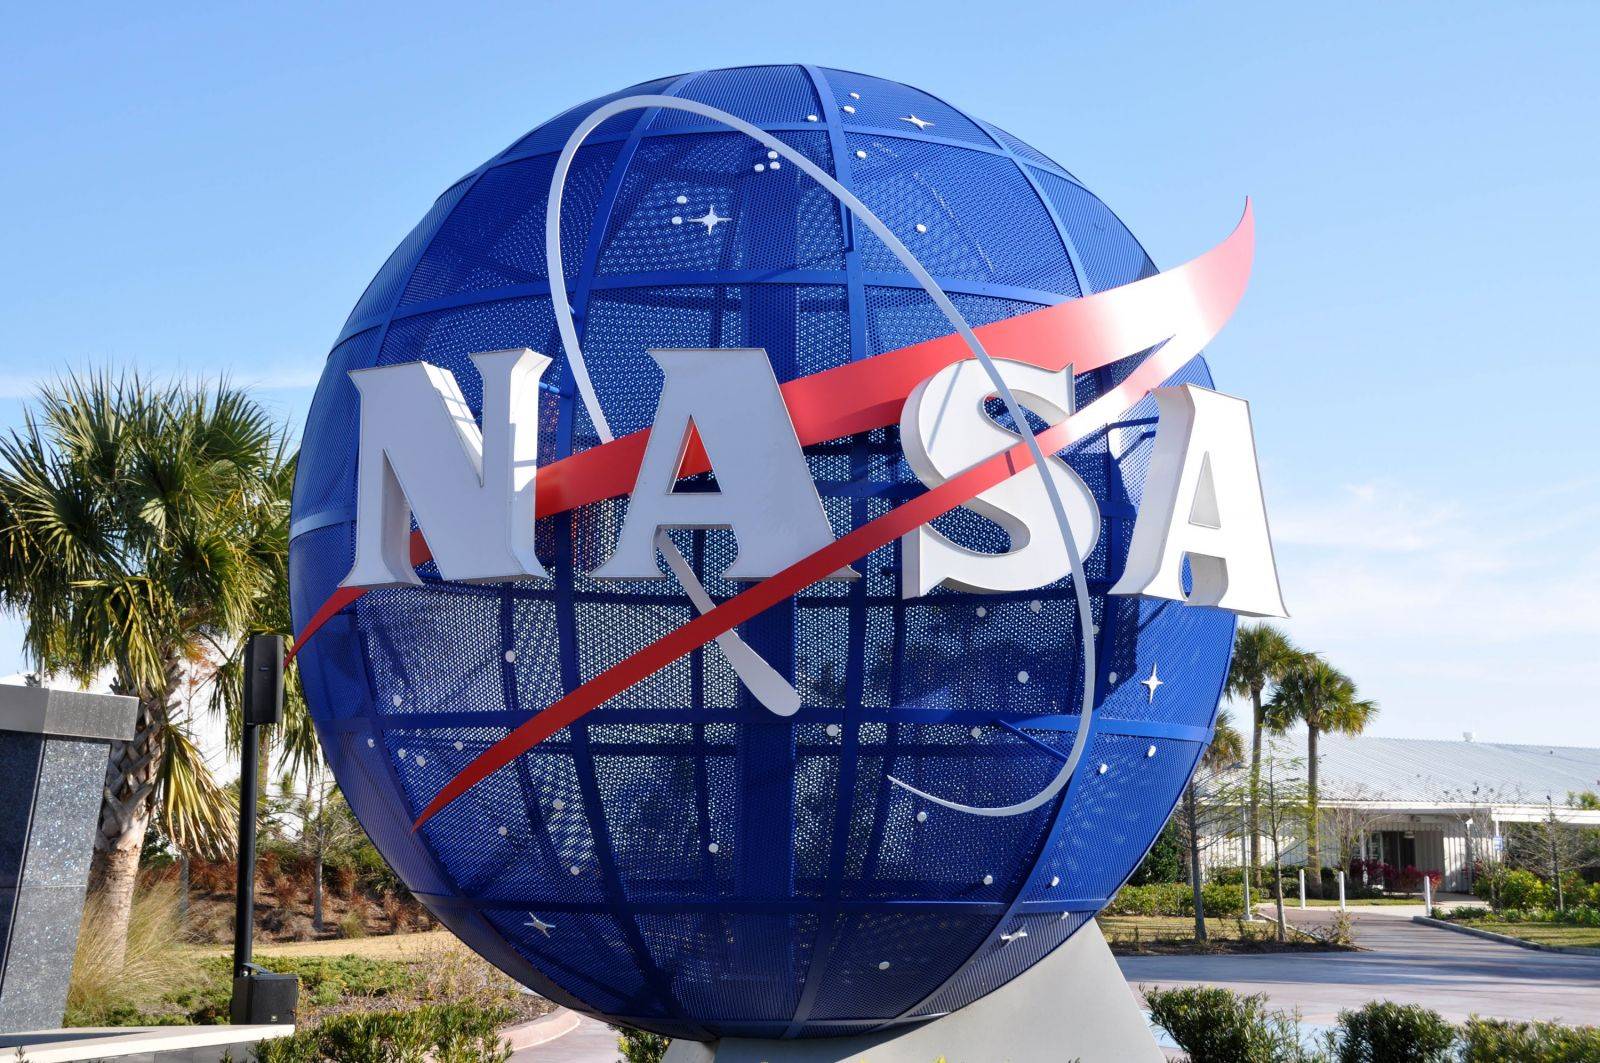 Учёные НАСА планируют запустить 3 спутника для изучения тропических штормов